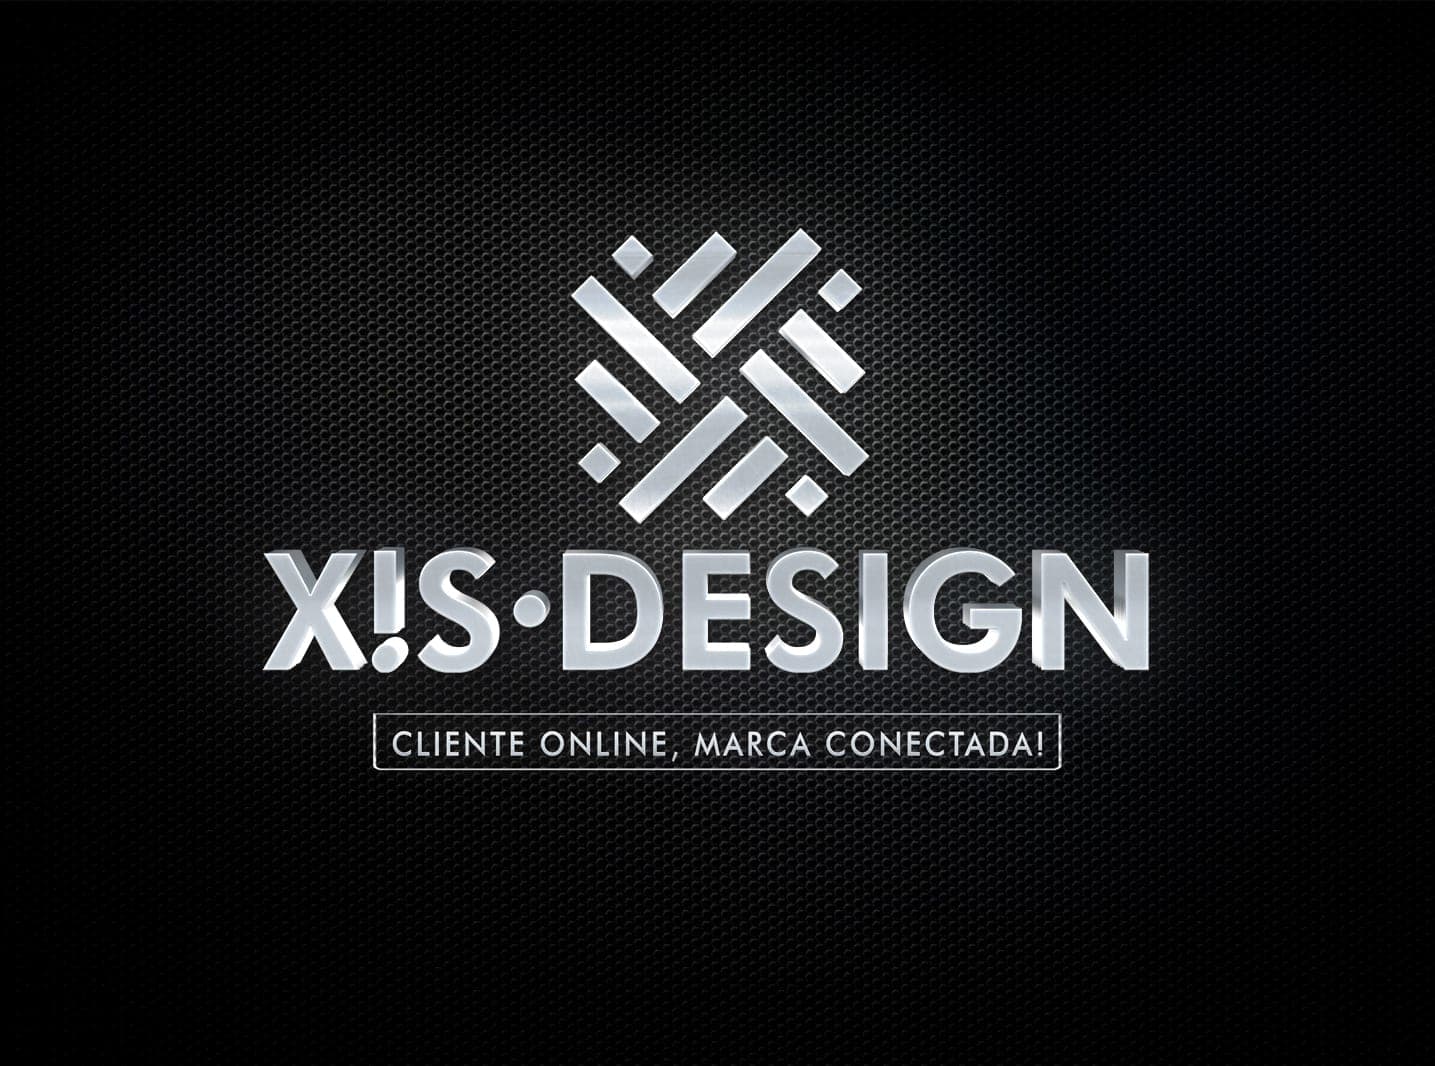 Xis-Design